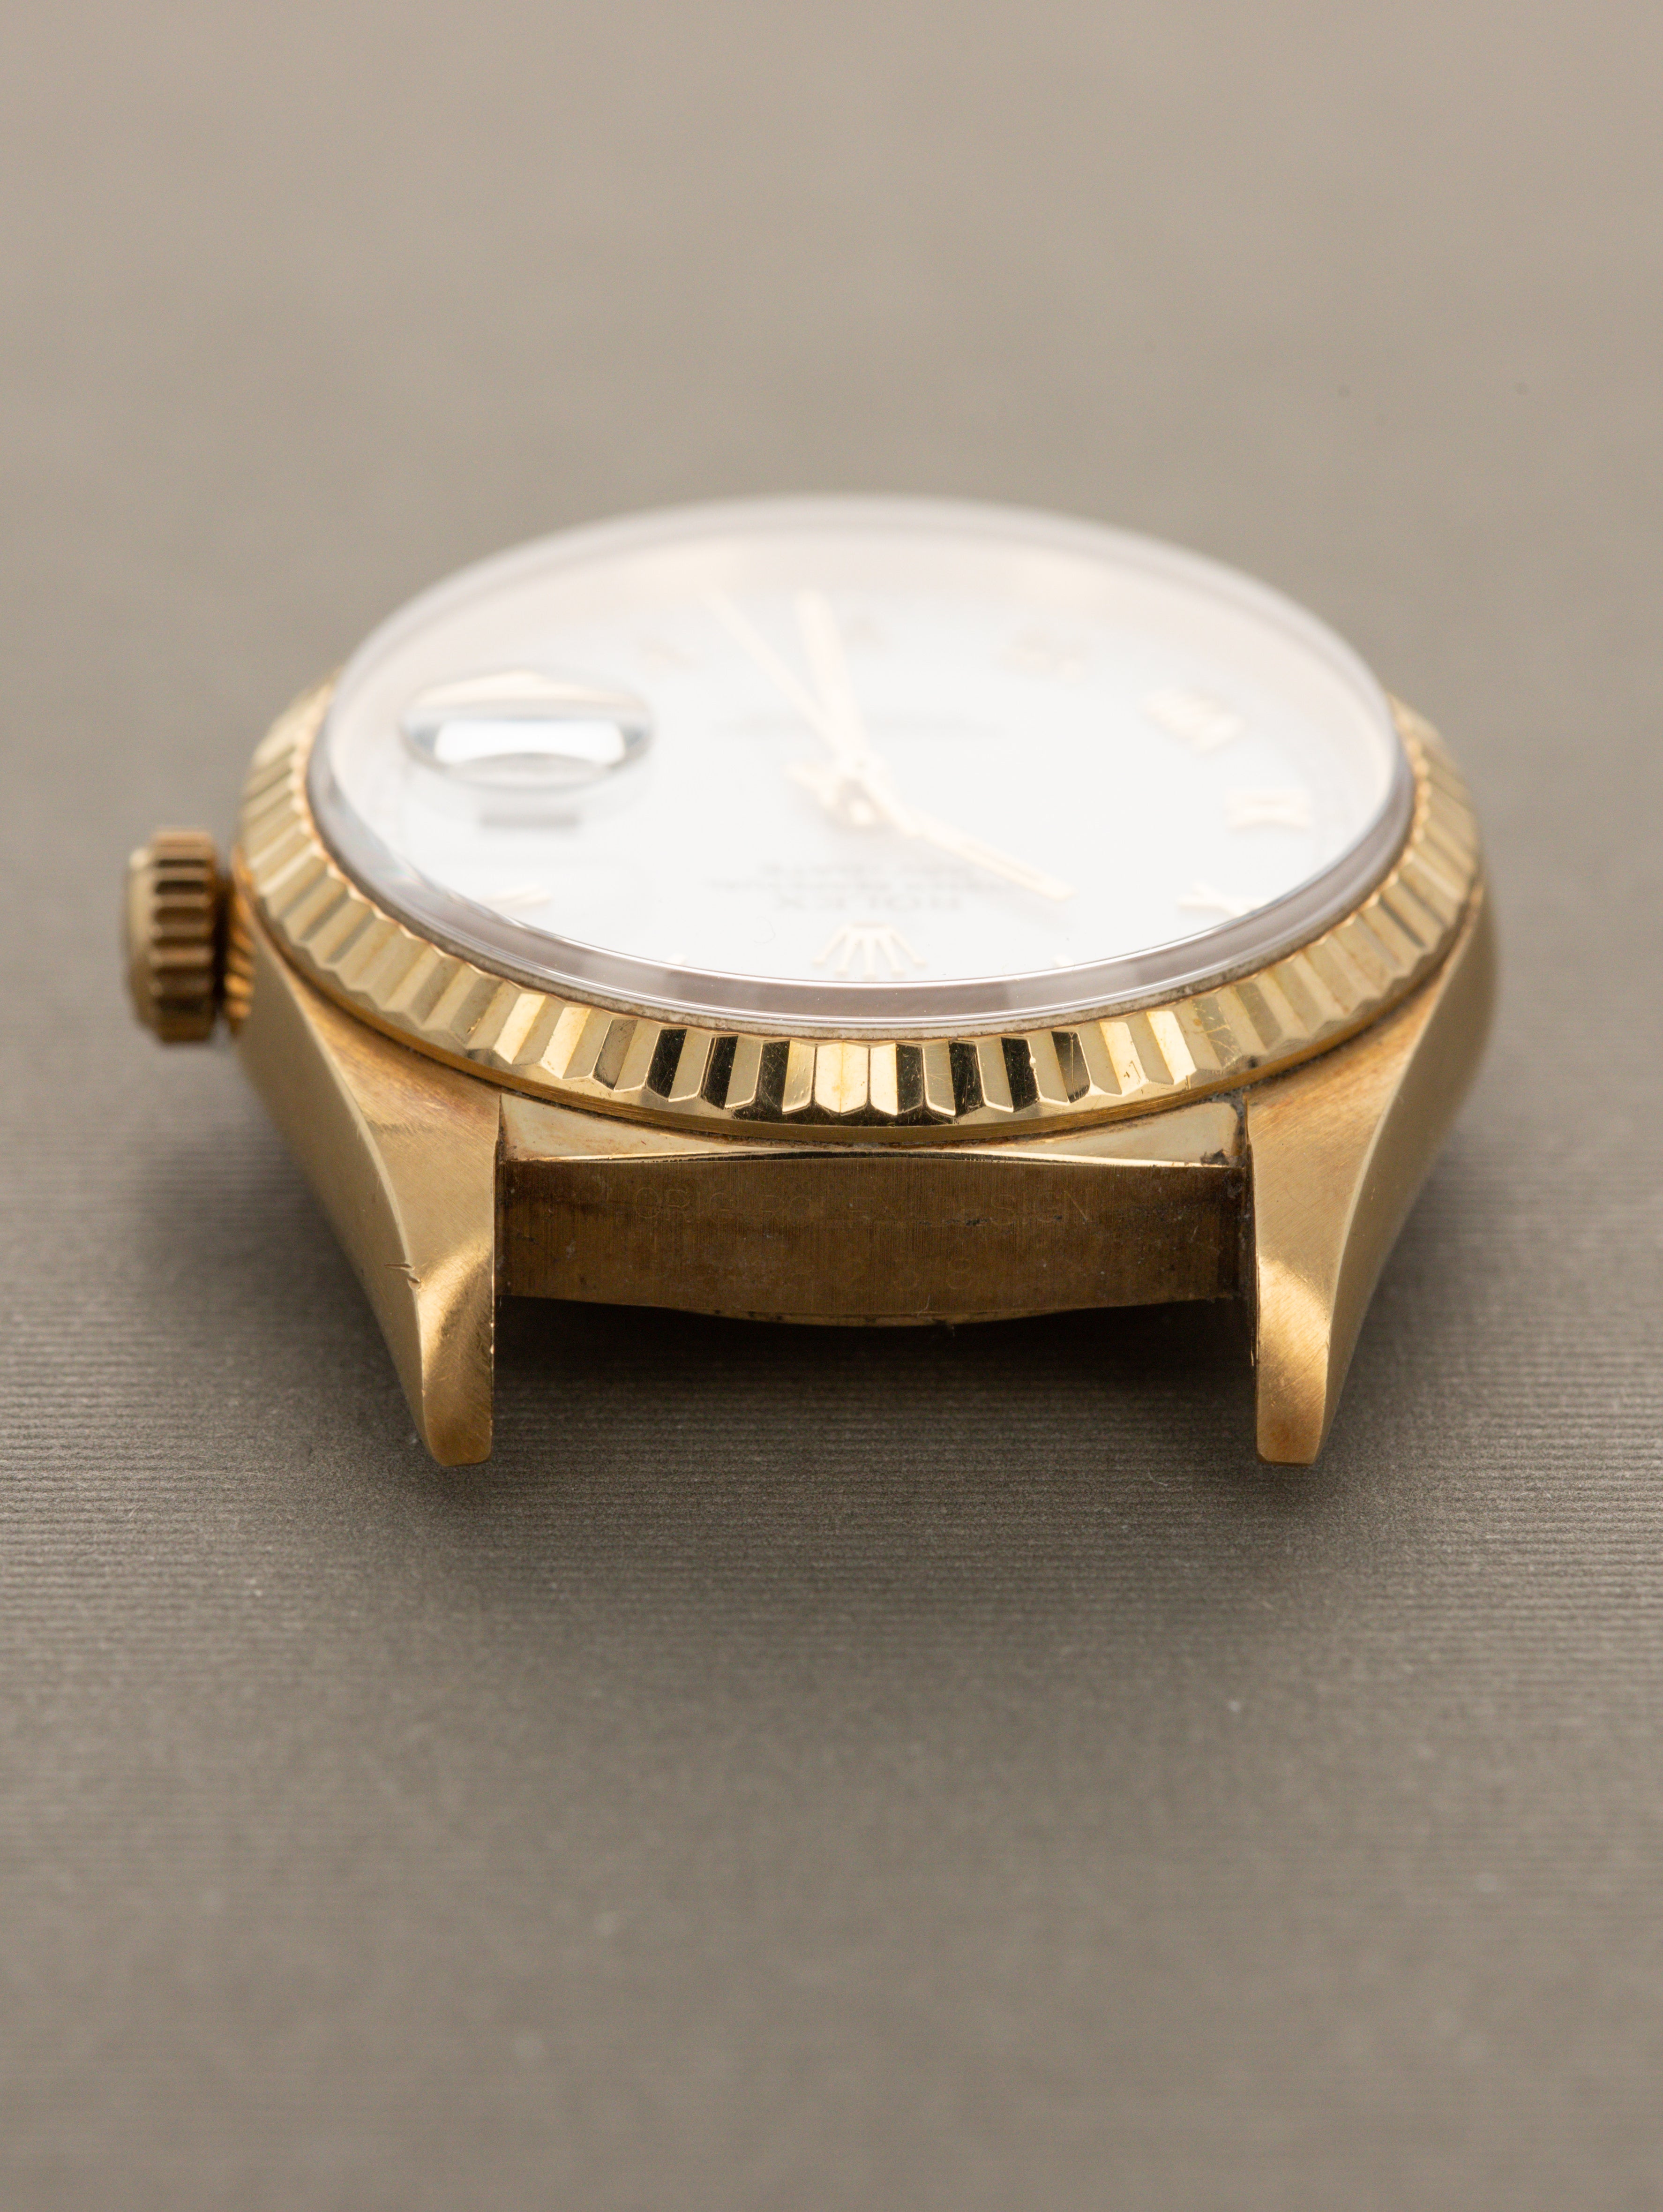 Rolex Day-Date Ref. 18238 - White Roman Dial